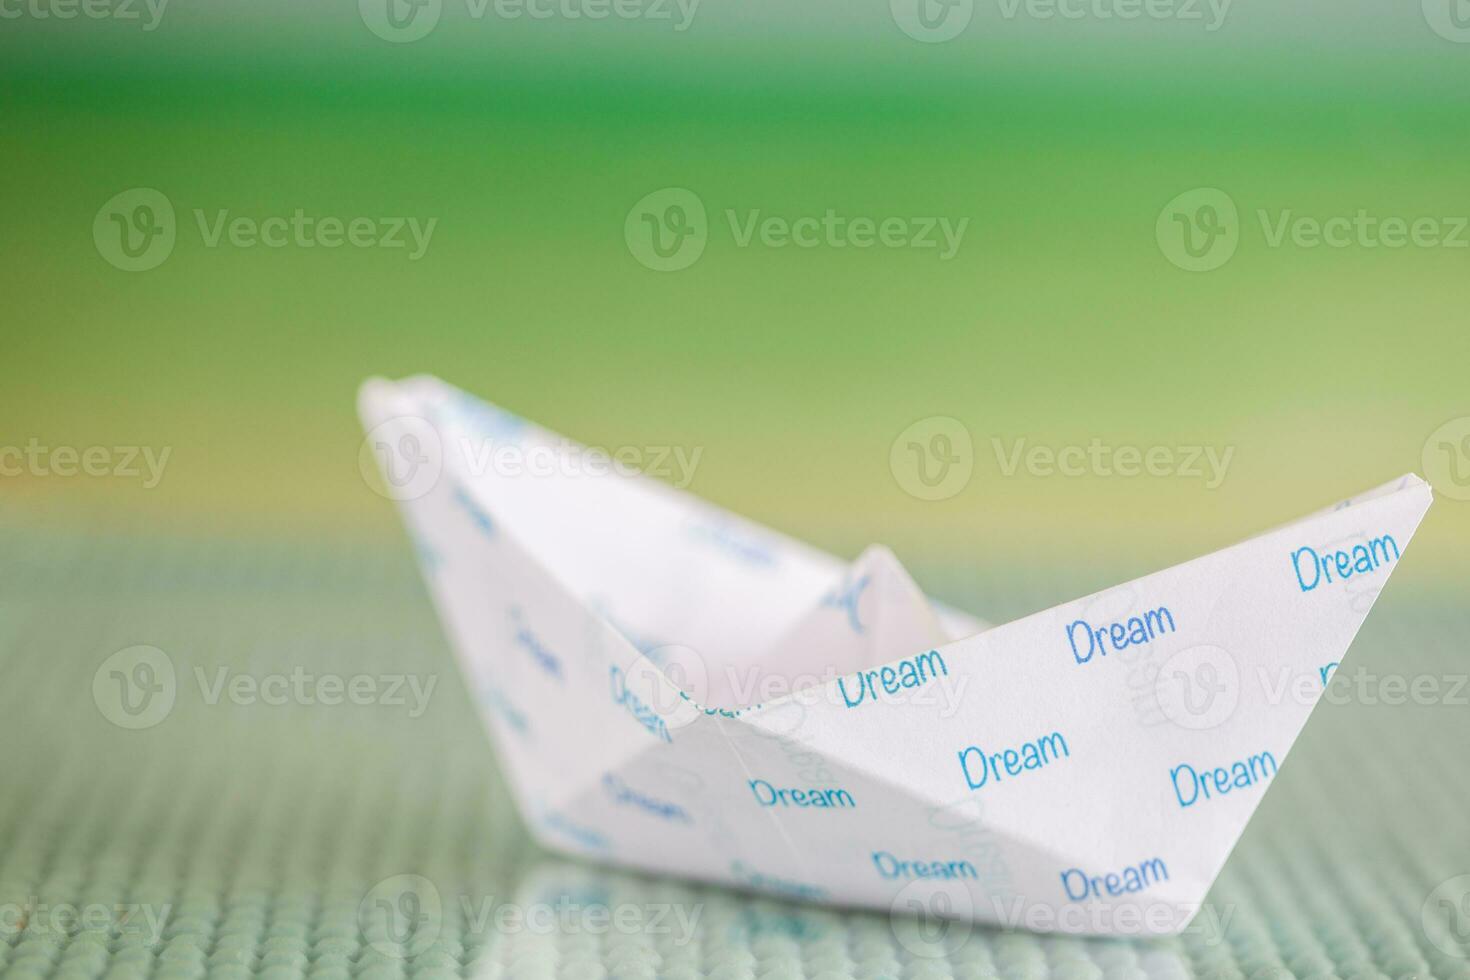 volgen uw dromen concept. origami boot foto